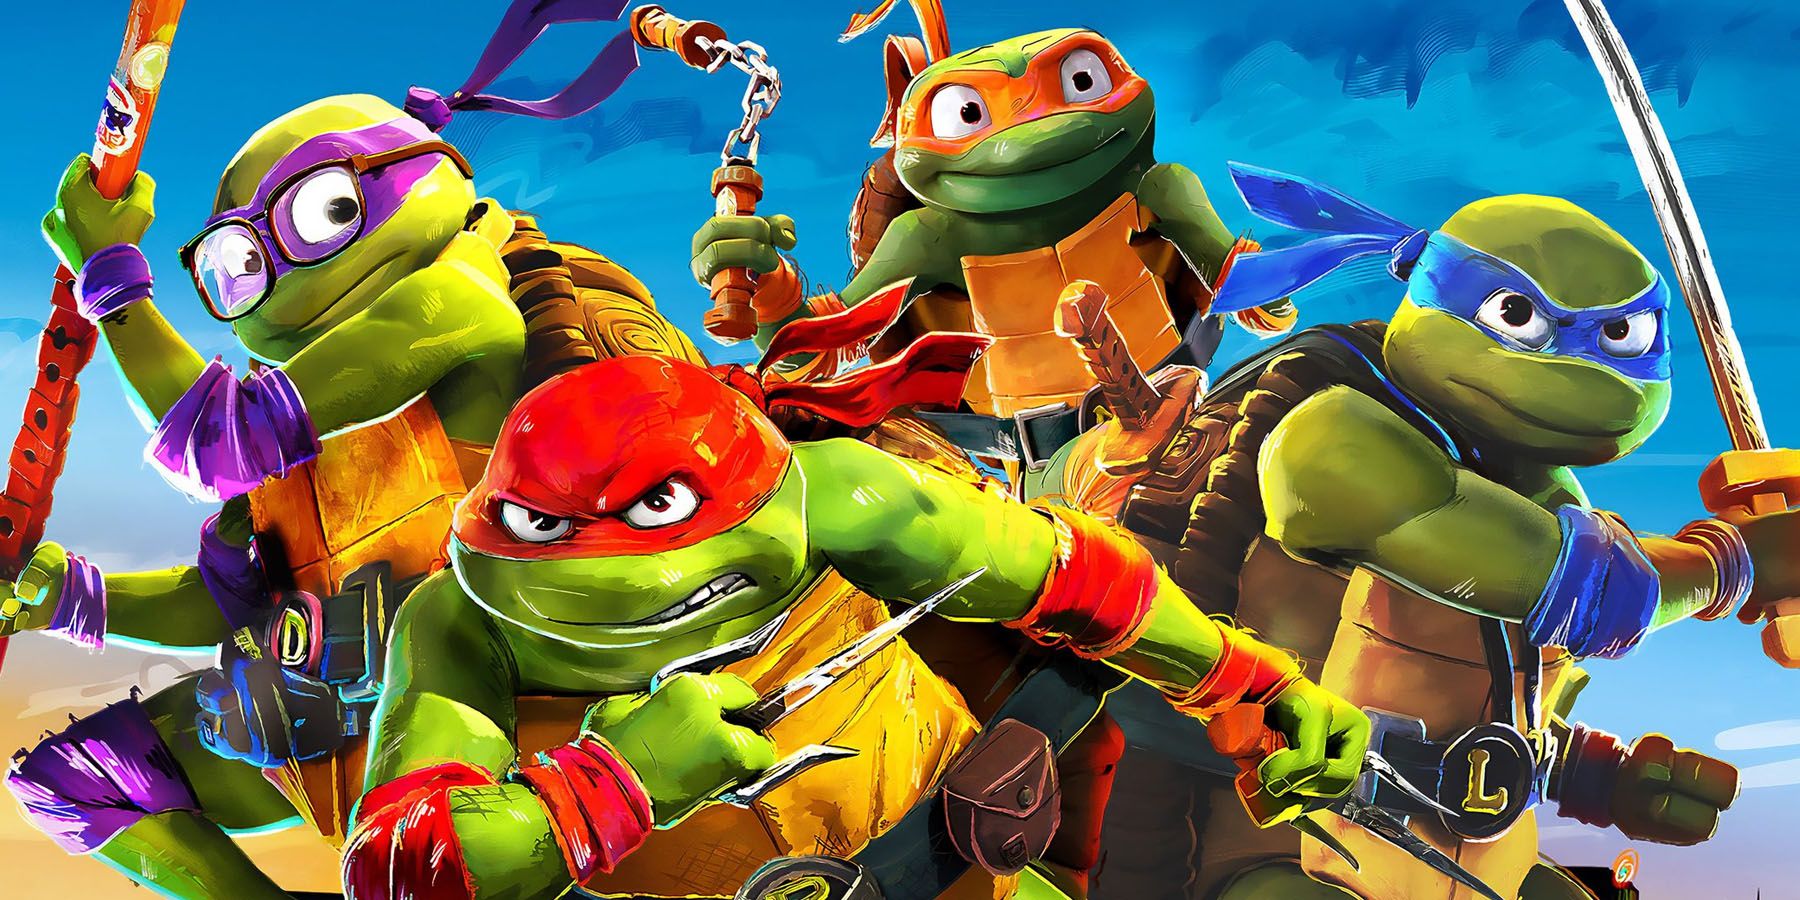 A promotional image of the Teenage Mutant Ninja Turtles in TMNT: Mutant Mayhem.